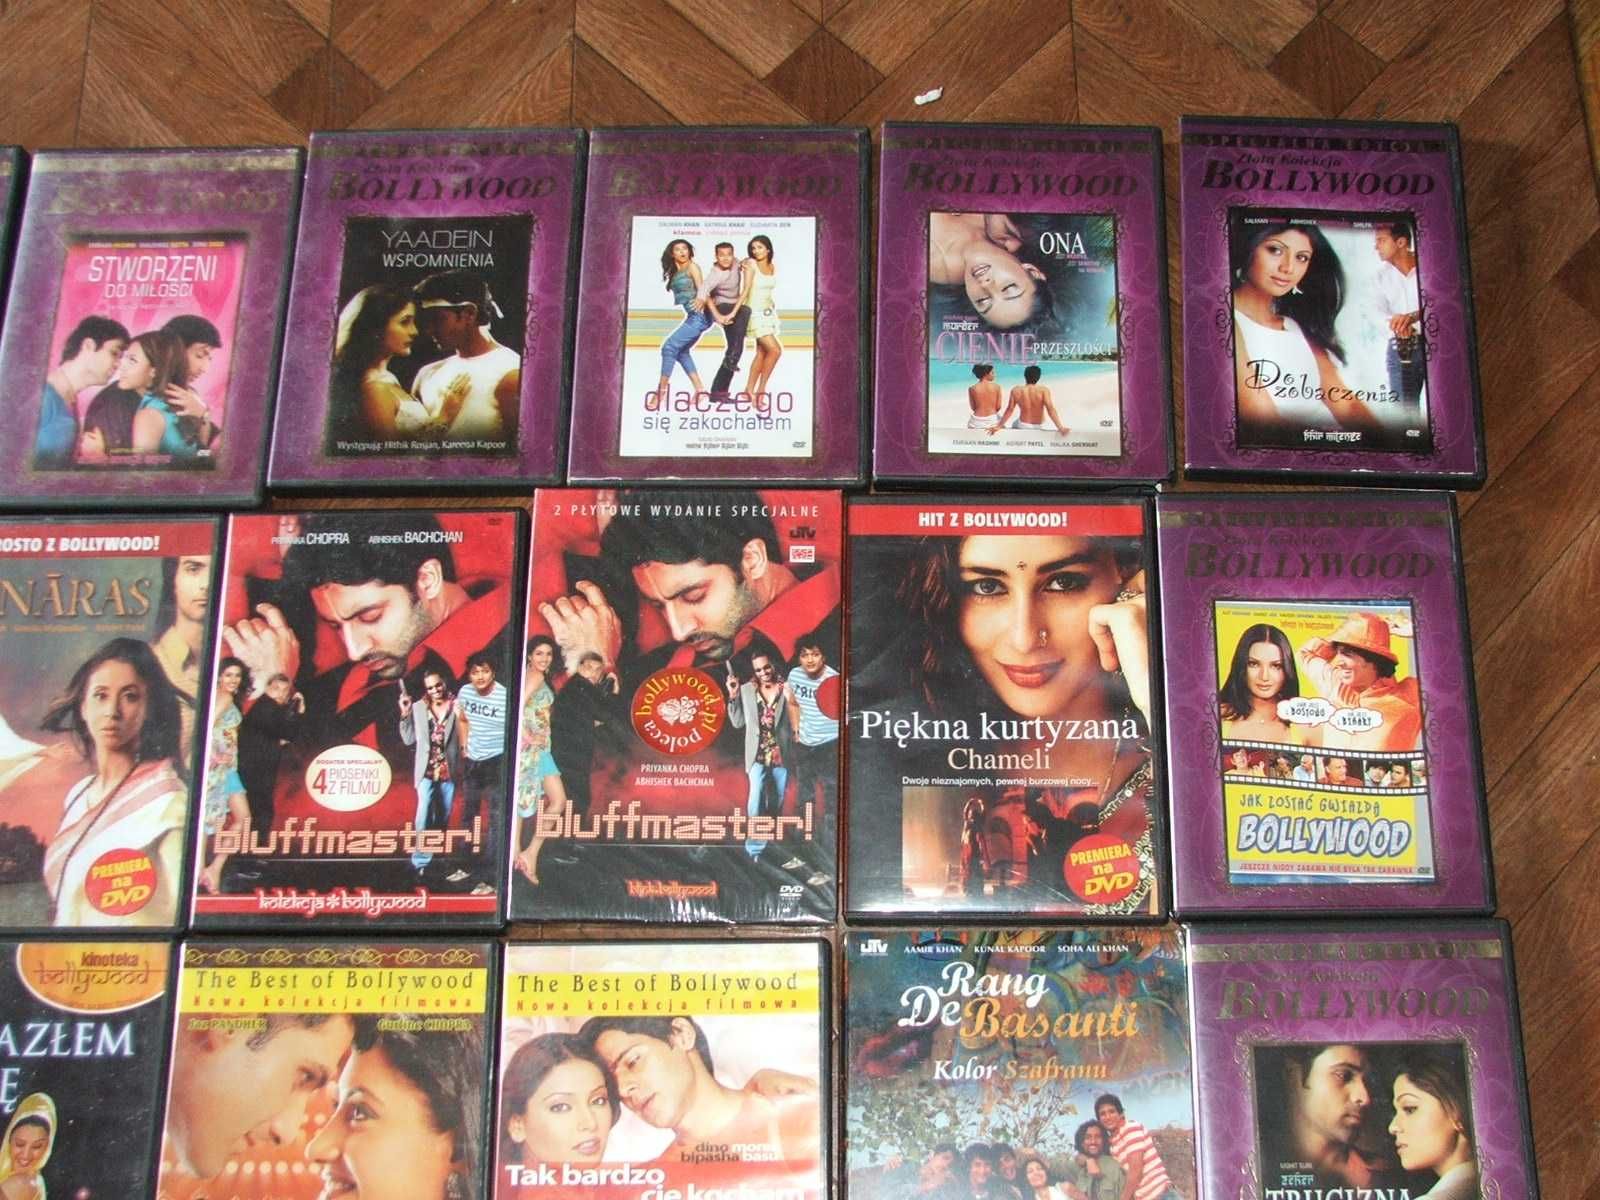 Bollywood hity, nówki, DON, Veer-Zaara, Bluffmaster, i inne dvd